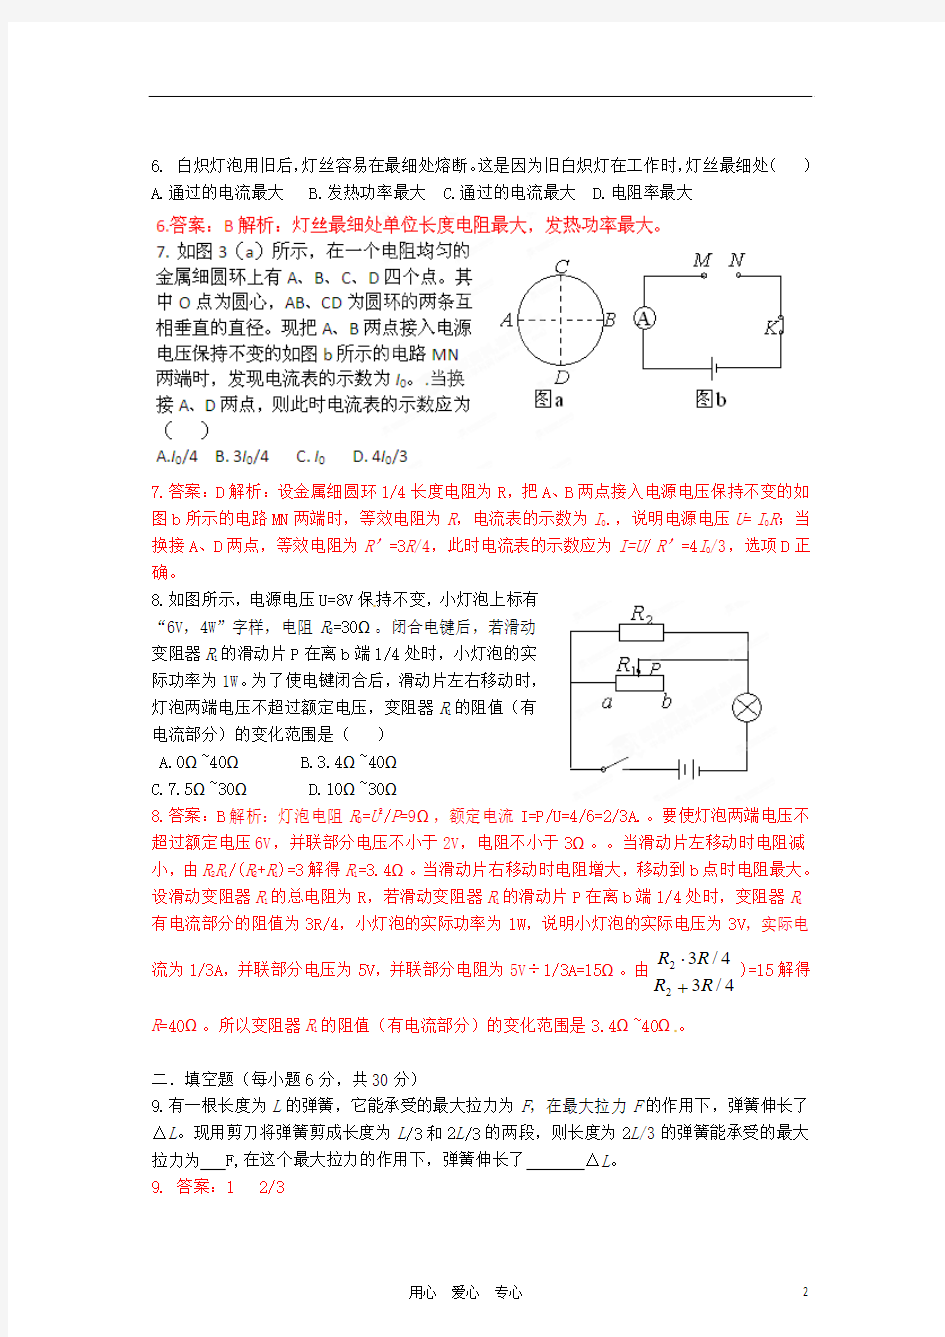 初中应用物理知识竞赛辅导讲座 2008上海复赛真题解析(教师版)